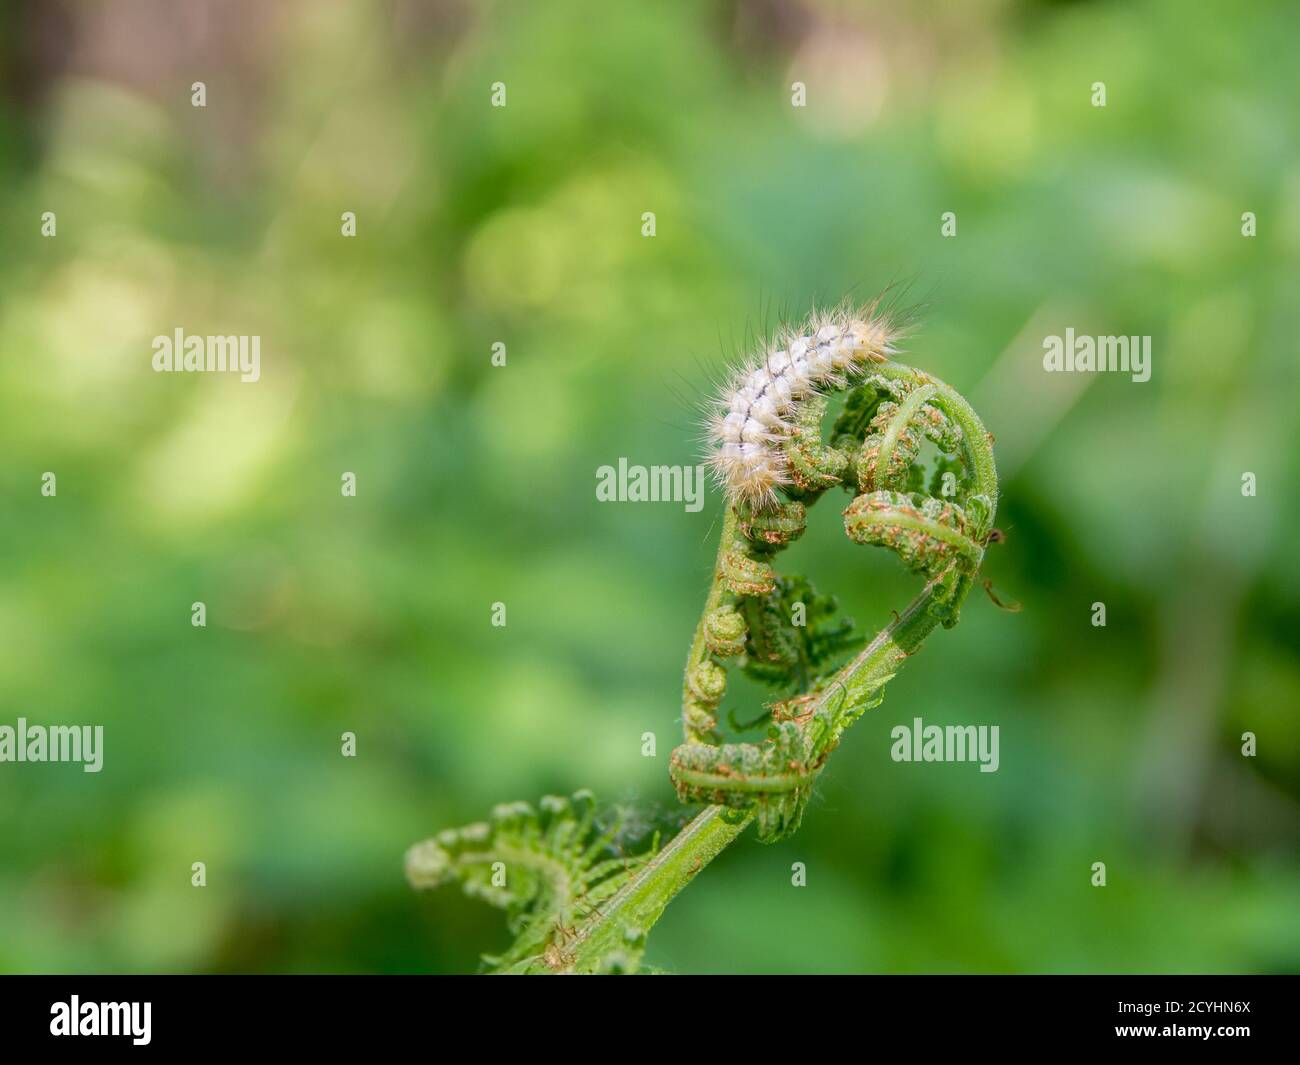 young shoots of bracken fern eaten by a light shaggy caterpillar, selective focus Stock Photo